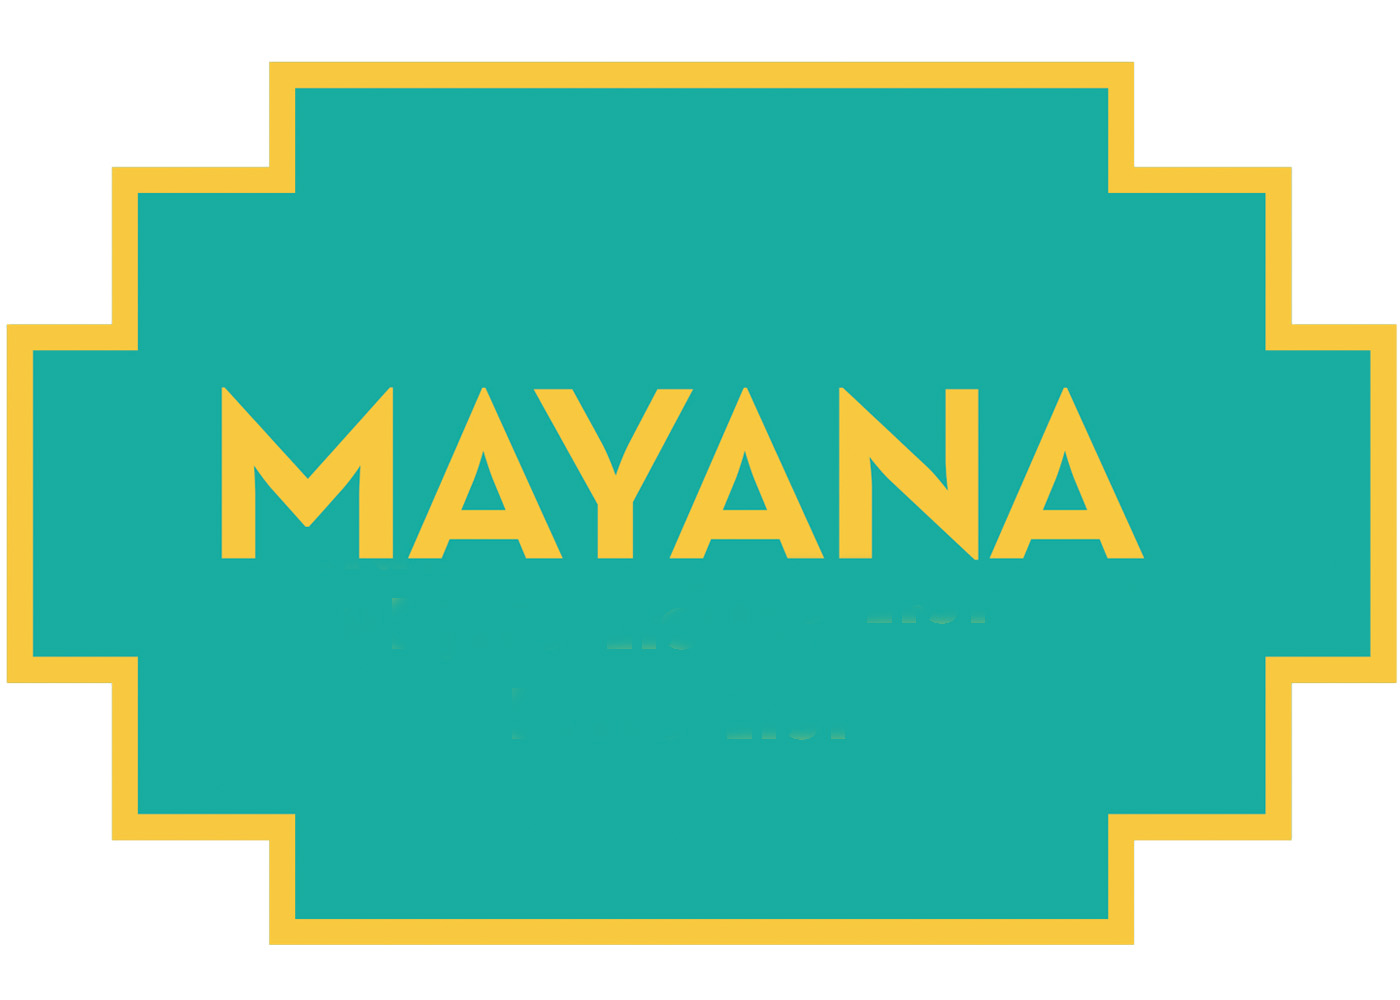 Mayana Chocolates